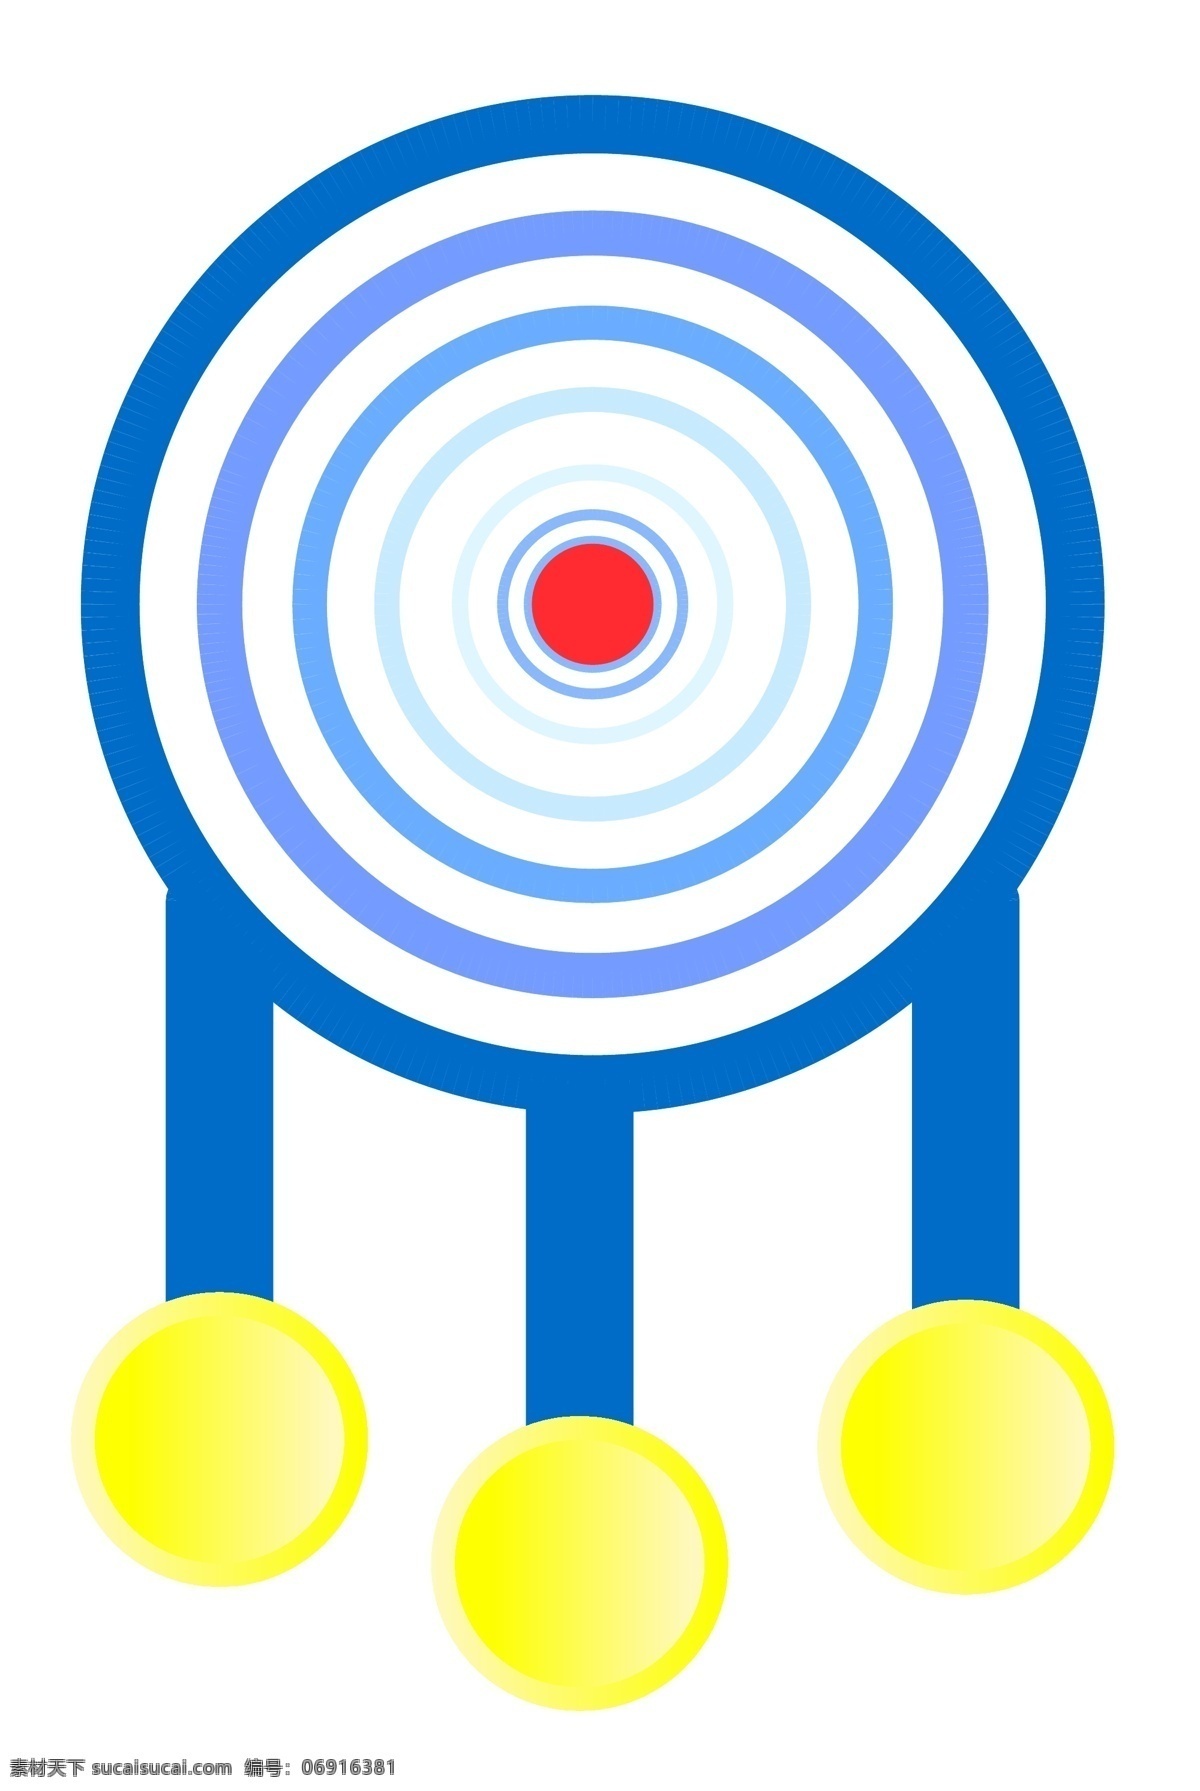 蓝色 圆形 标 靶 插图 圆形黄色图案 蓝色标靶 蓝色图案 立体图案 ppt设计 精致的图案 卡通插画 条例插图